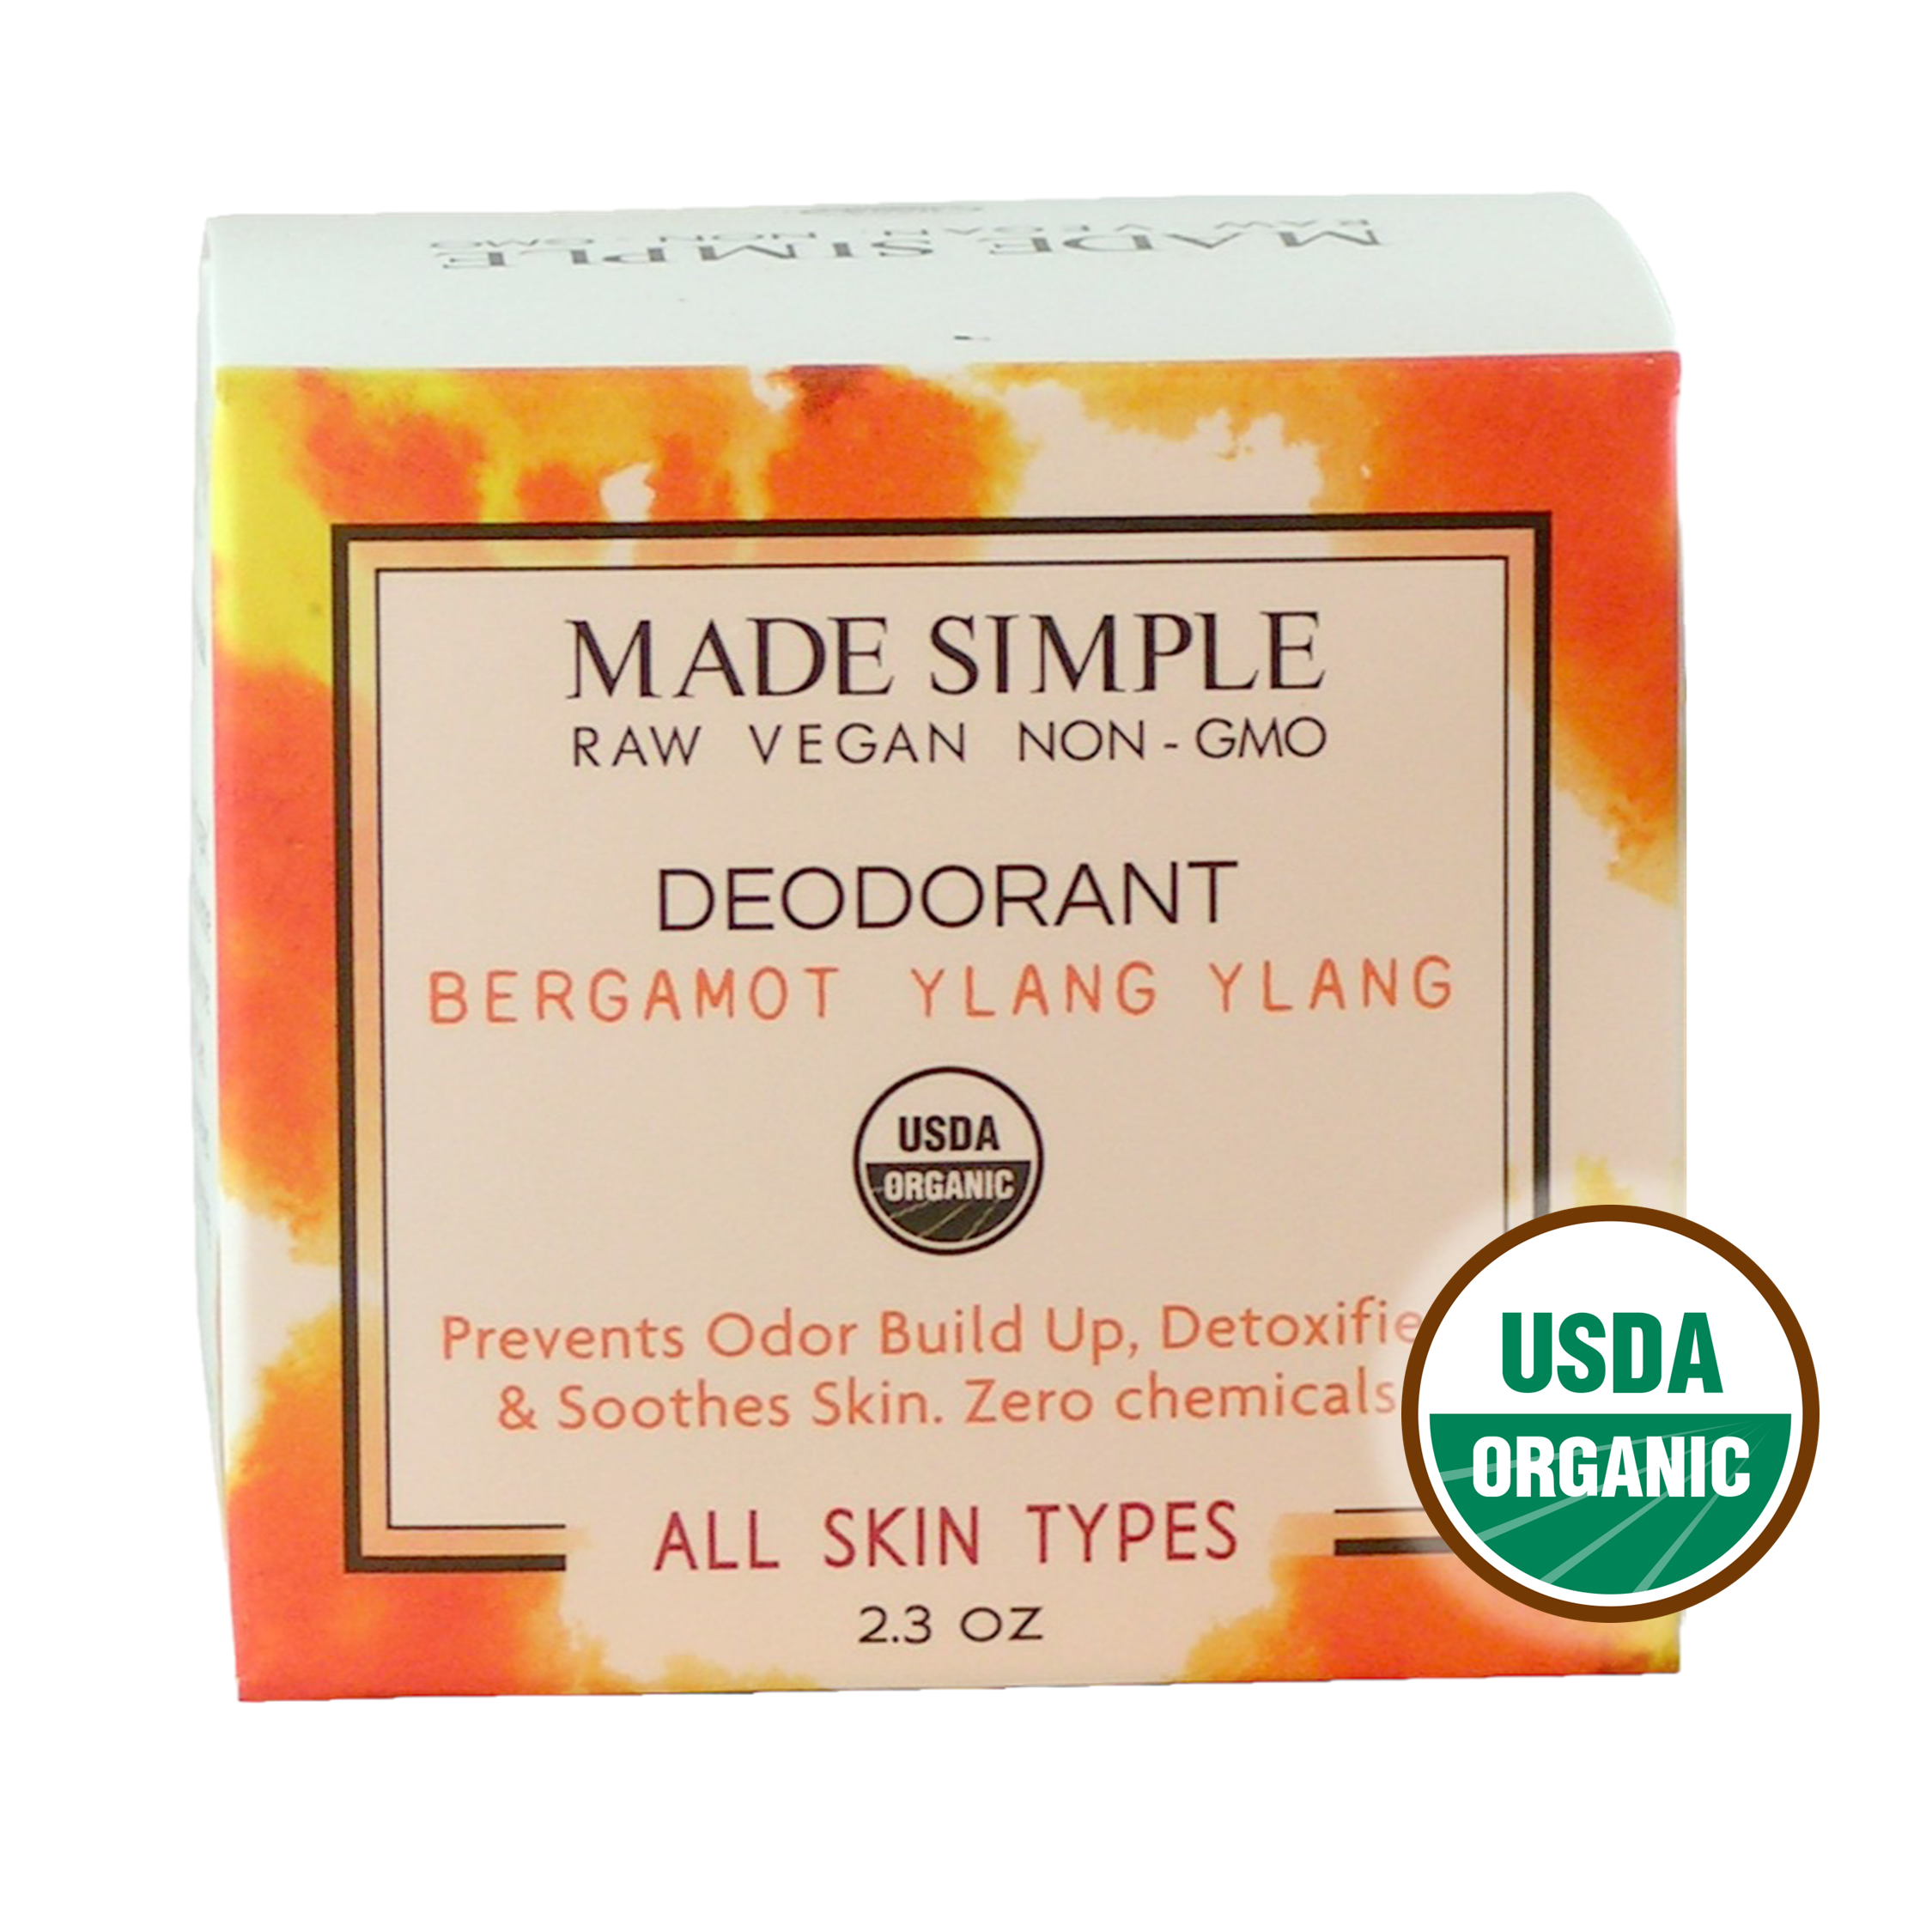 Made Simple Skin Care Bergamot Ylang Ylang Deodorant USDA certified organic raw vegan nonGMO